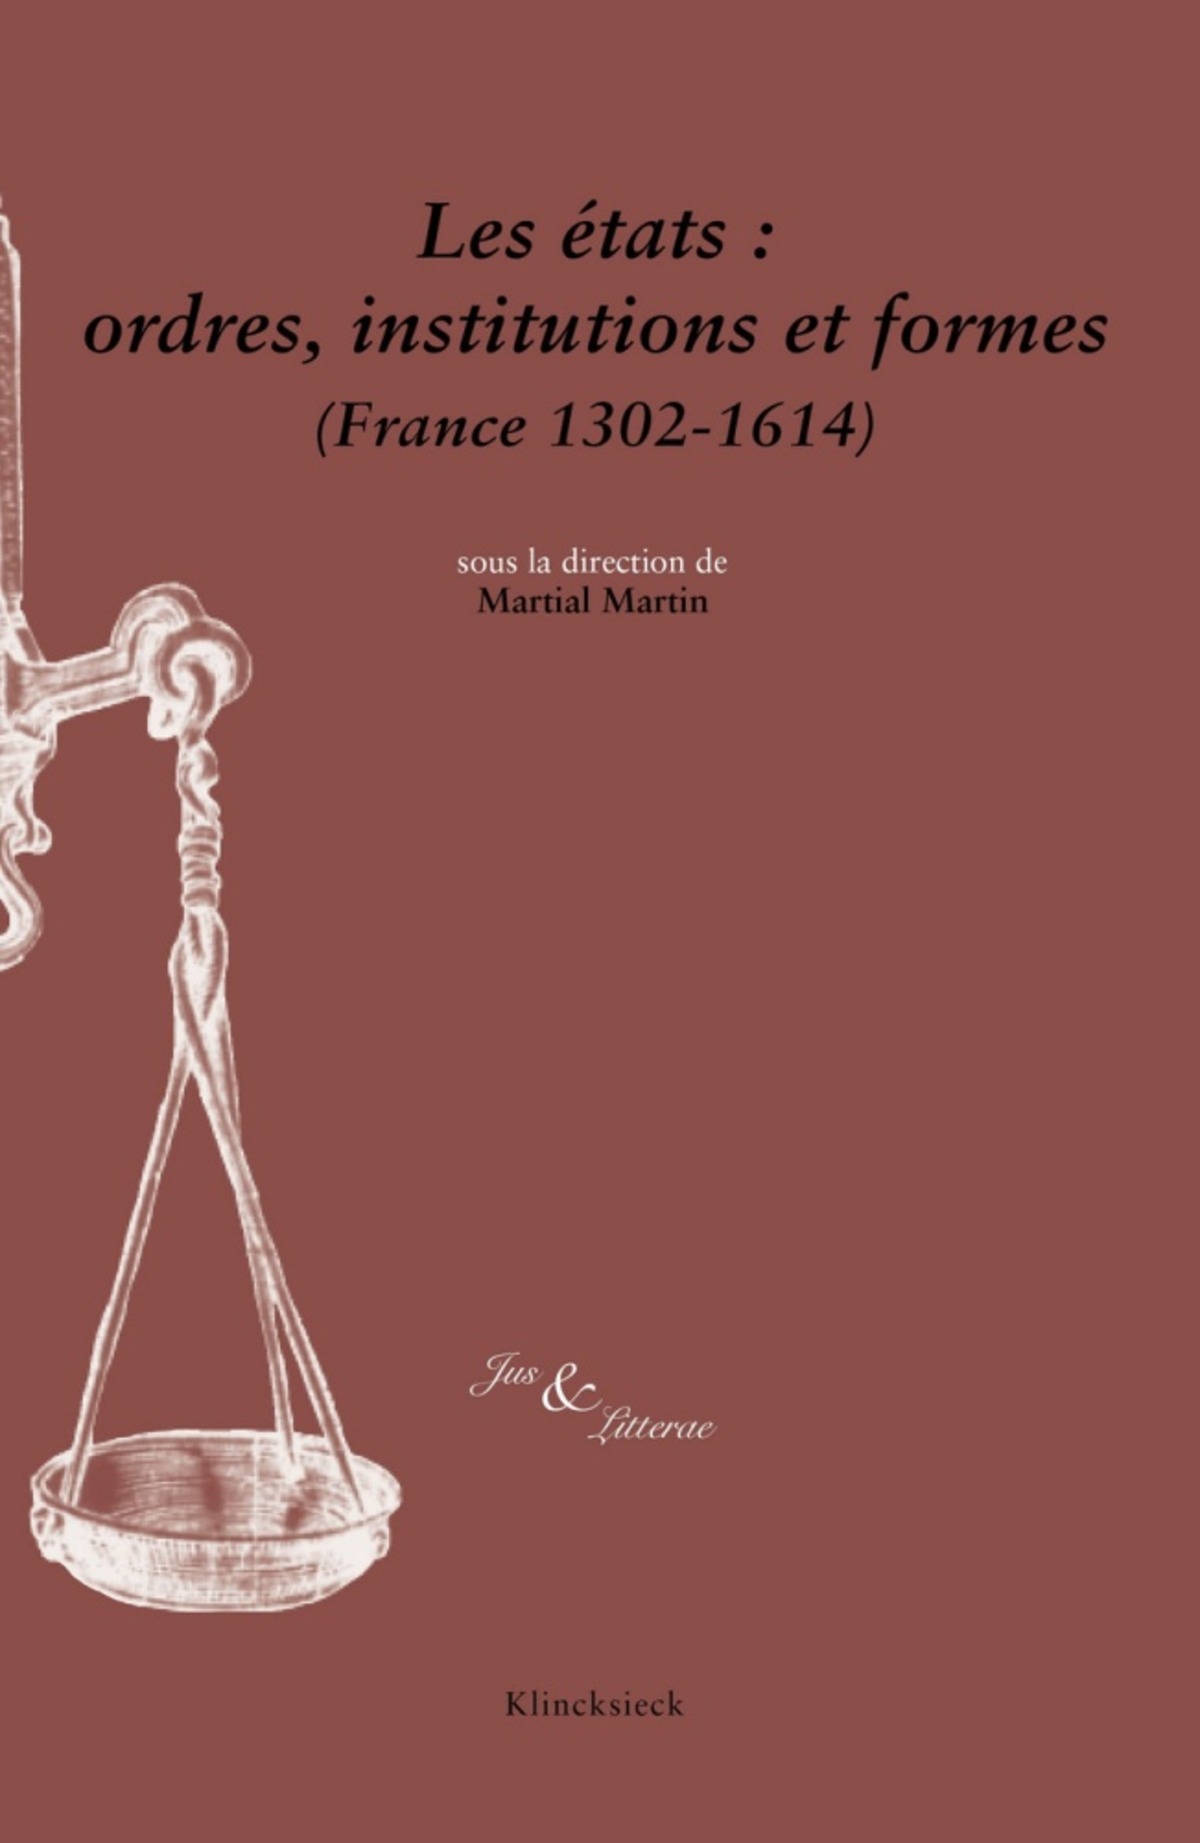 Les états : ordres, institutions et formes (France 1302-1614)